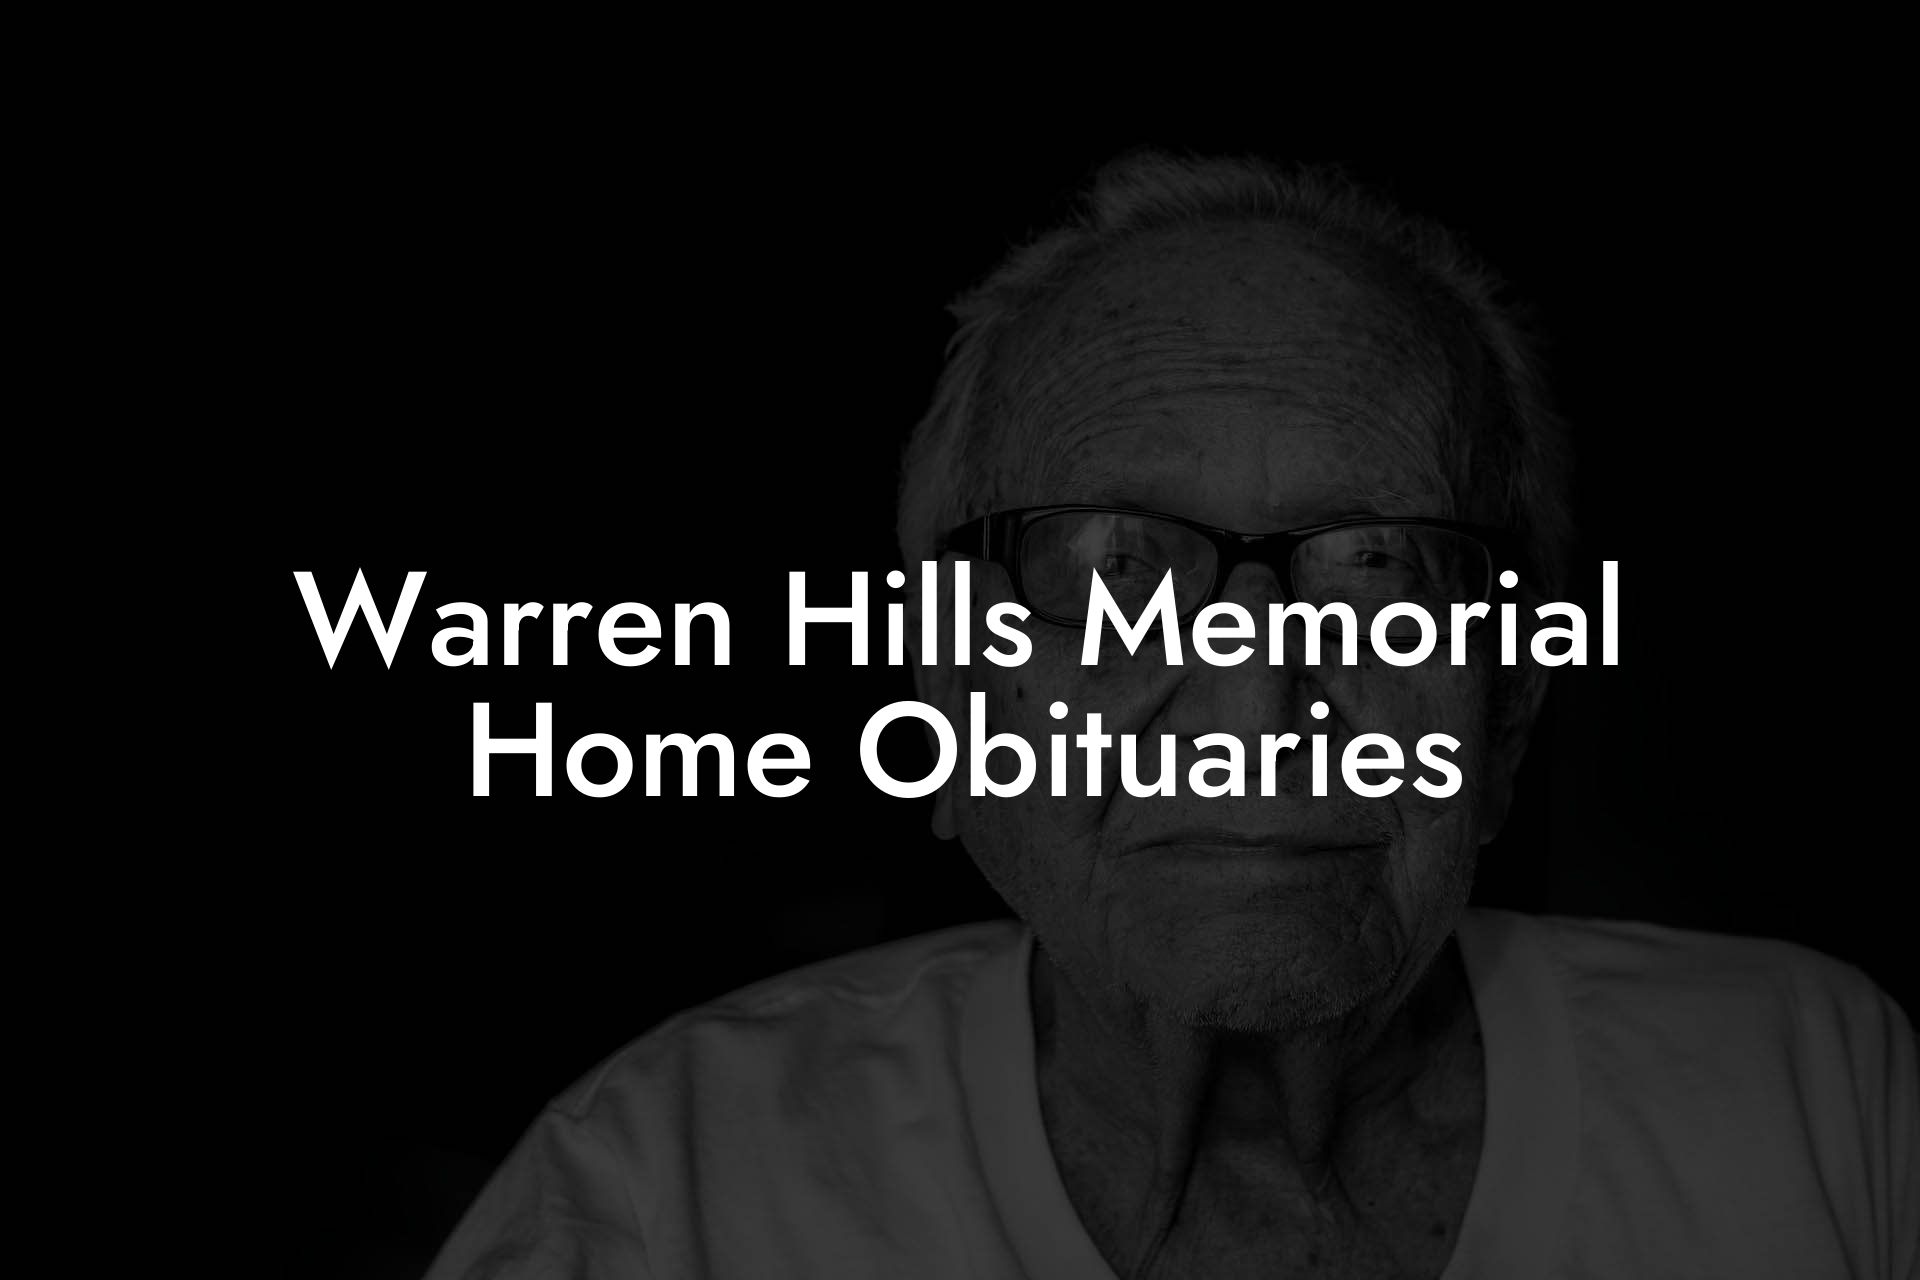 Warren Hills Memorial Home Obituaries